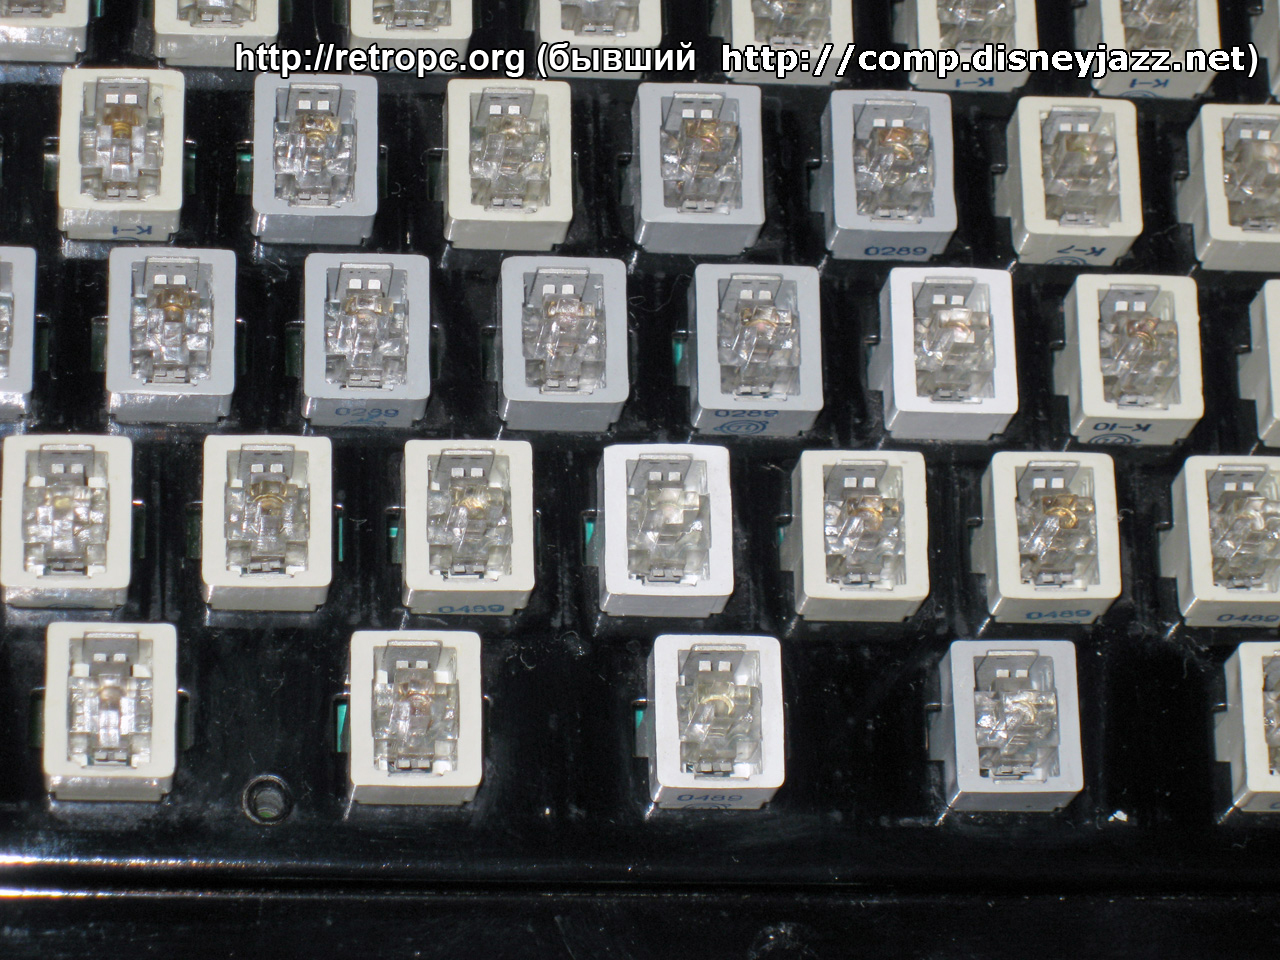 Контактная клавиатура от БК 0011 (Бытовой Компьютер)